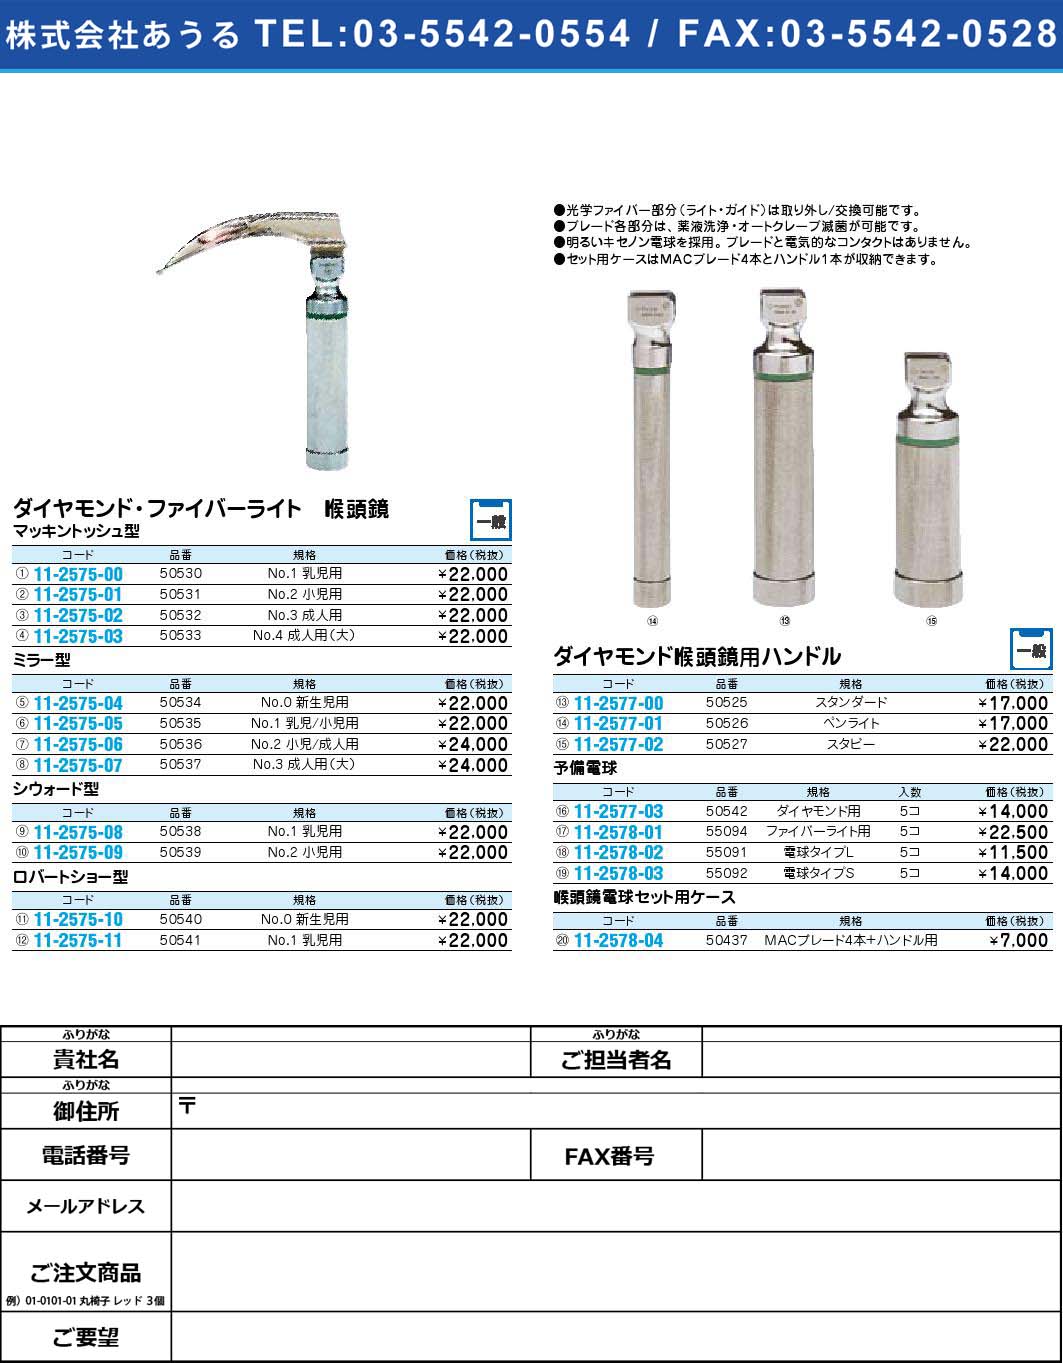 ダイヤモンド・ファイバーライト 喉頭鏡 予備電球55091(11-2578-02)